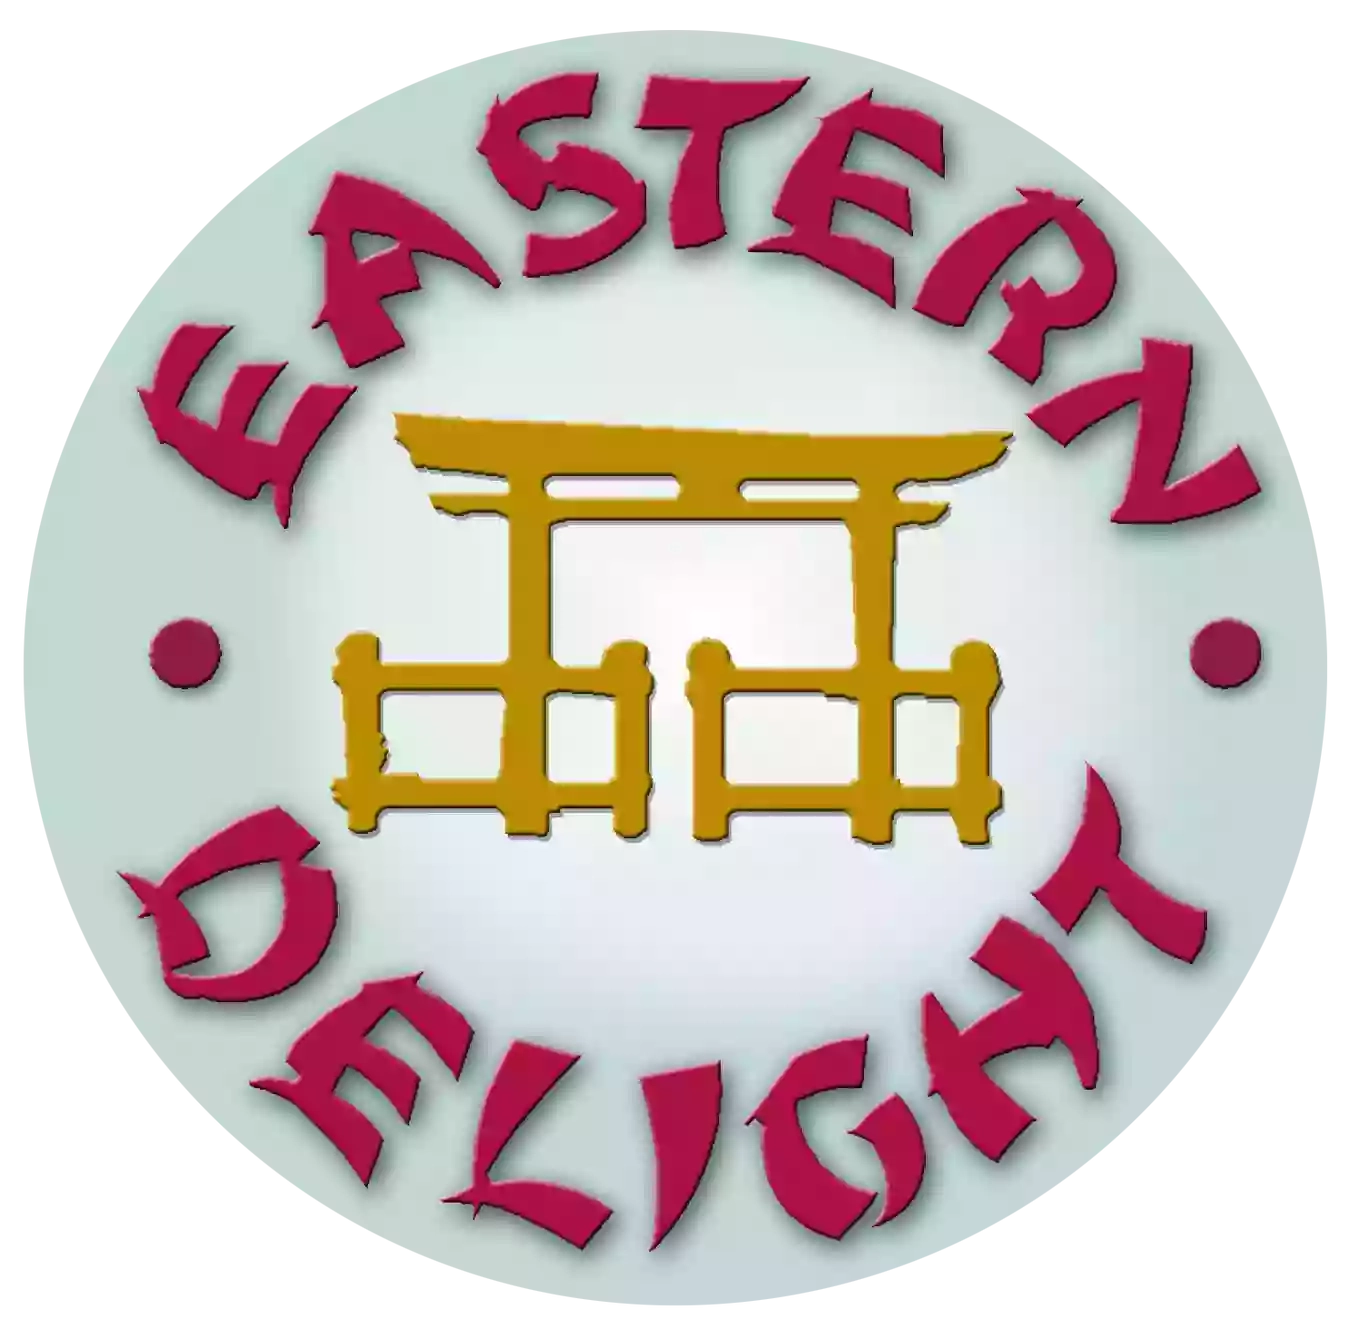 Eastern Delight Restaurant